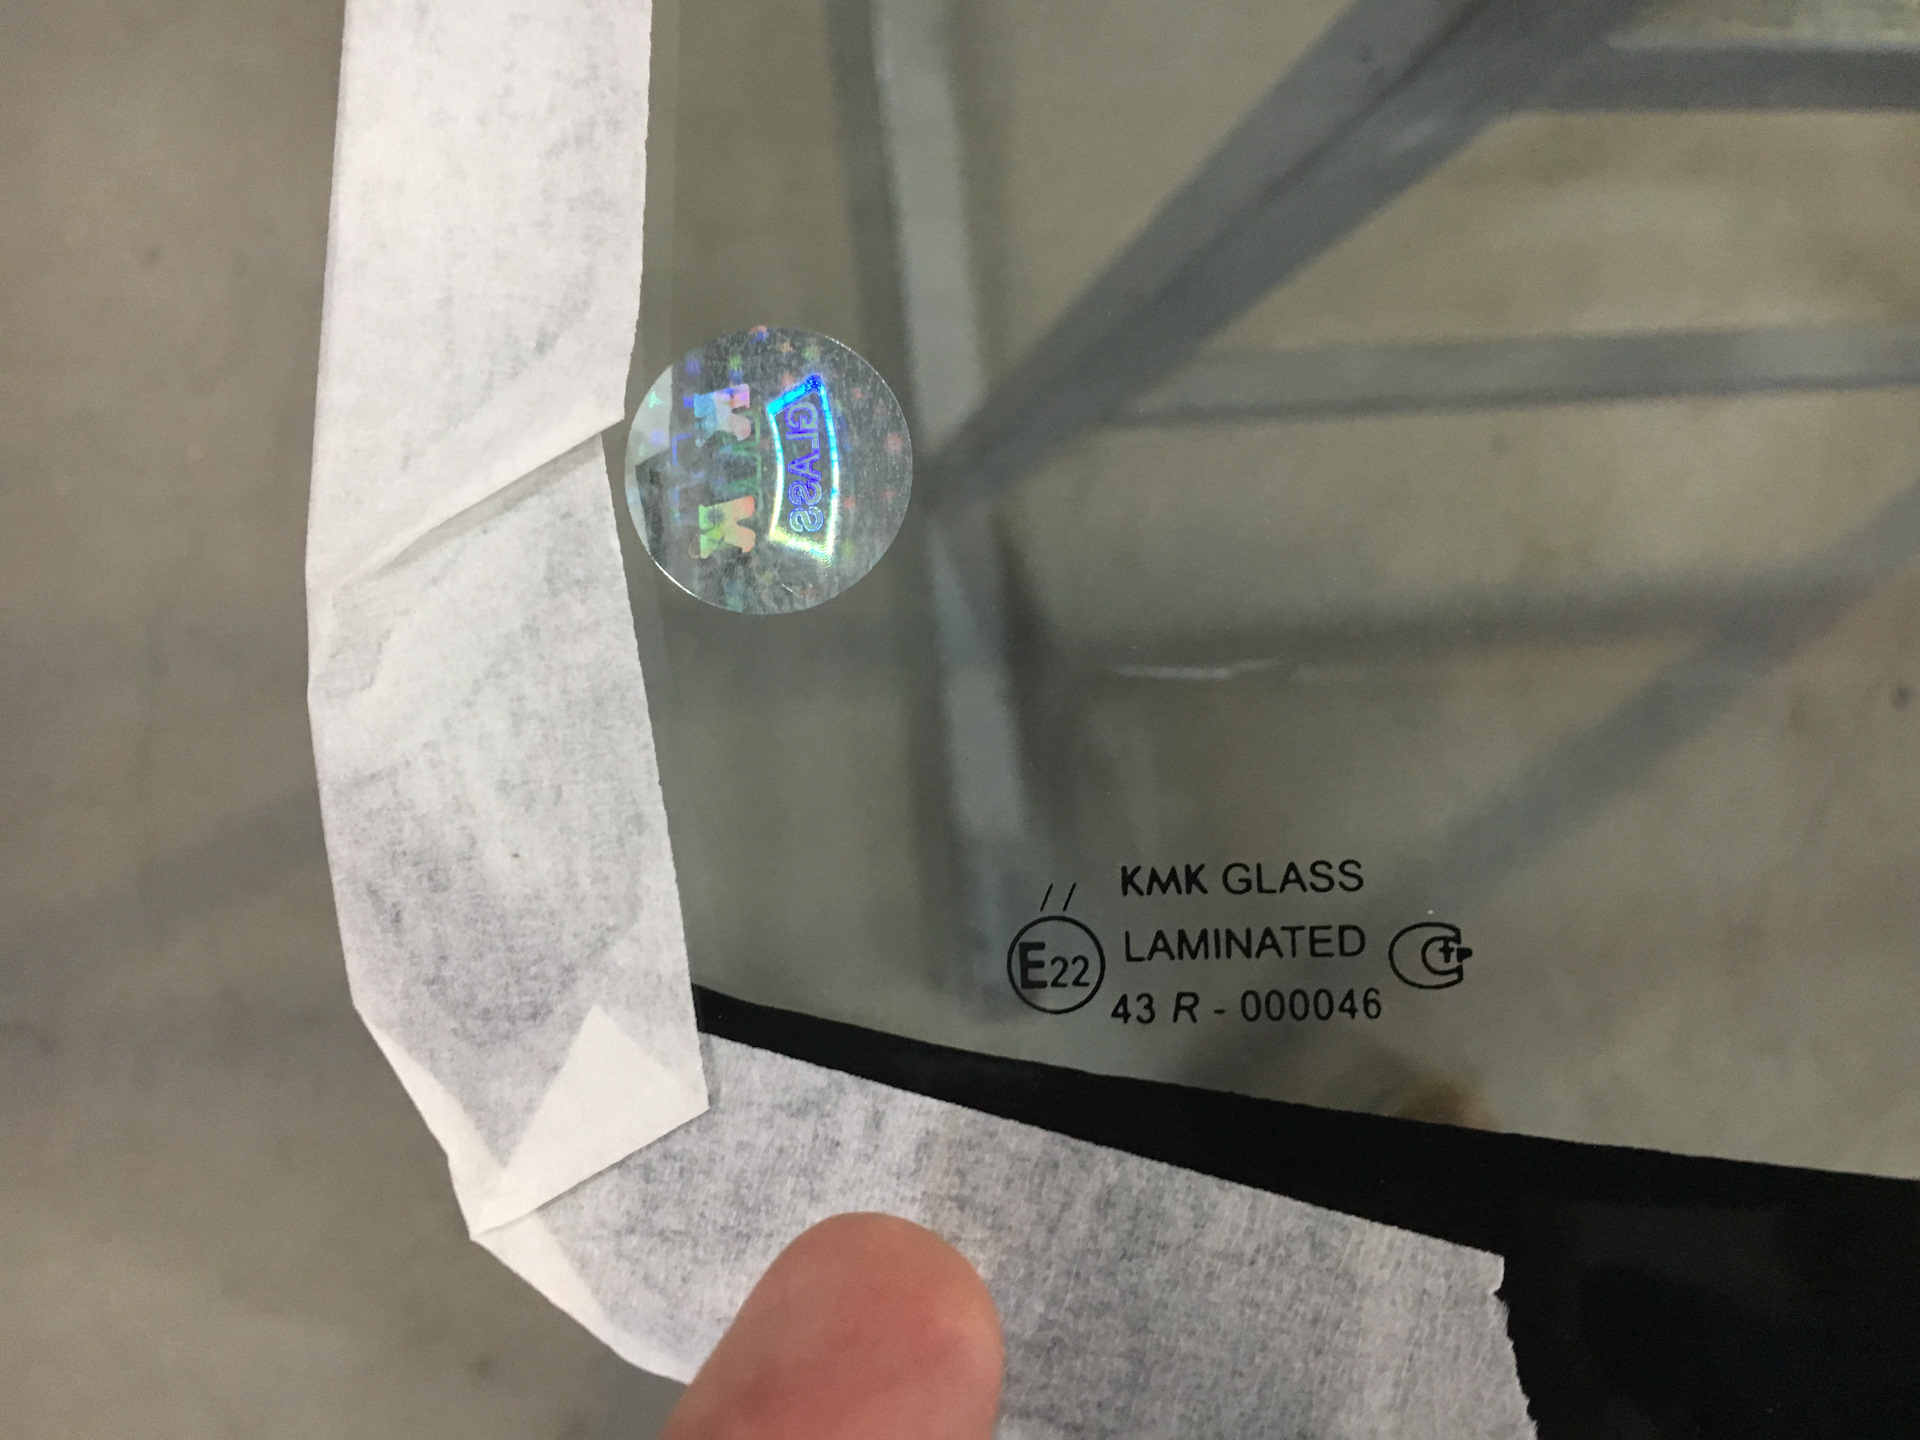 Стекло кмк производитель. KMK Glass 099100. KMK Glass лобовое стекло. КМК Glass 43r-000045 стекло лобовое. Зеленое стекло KMK Glass.